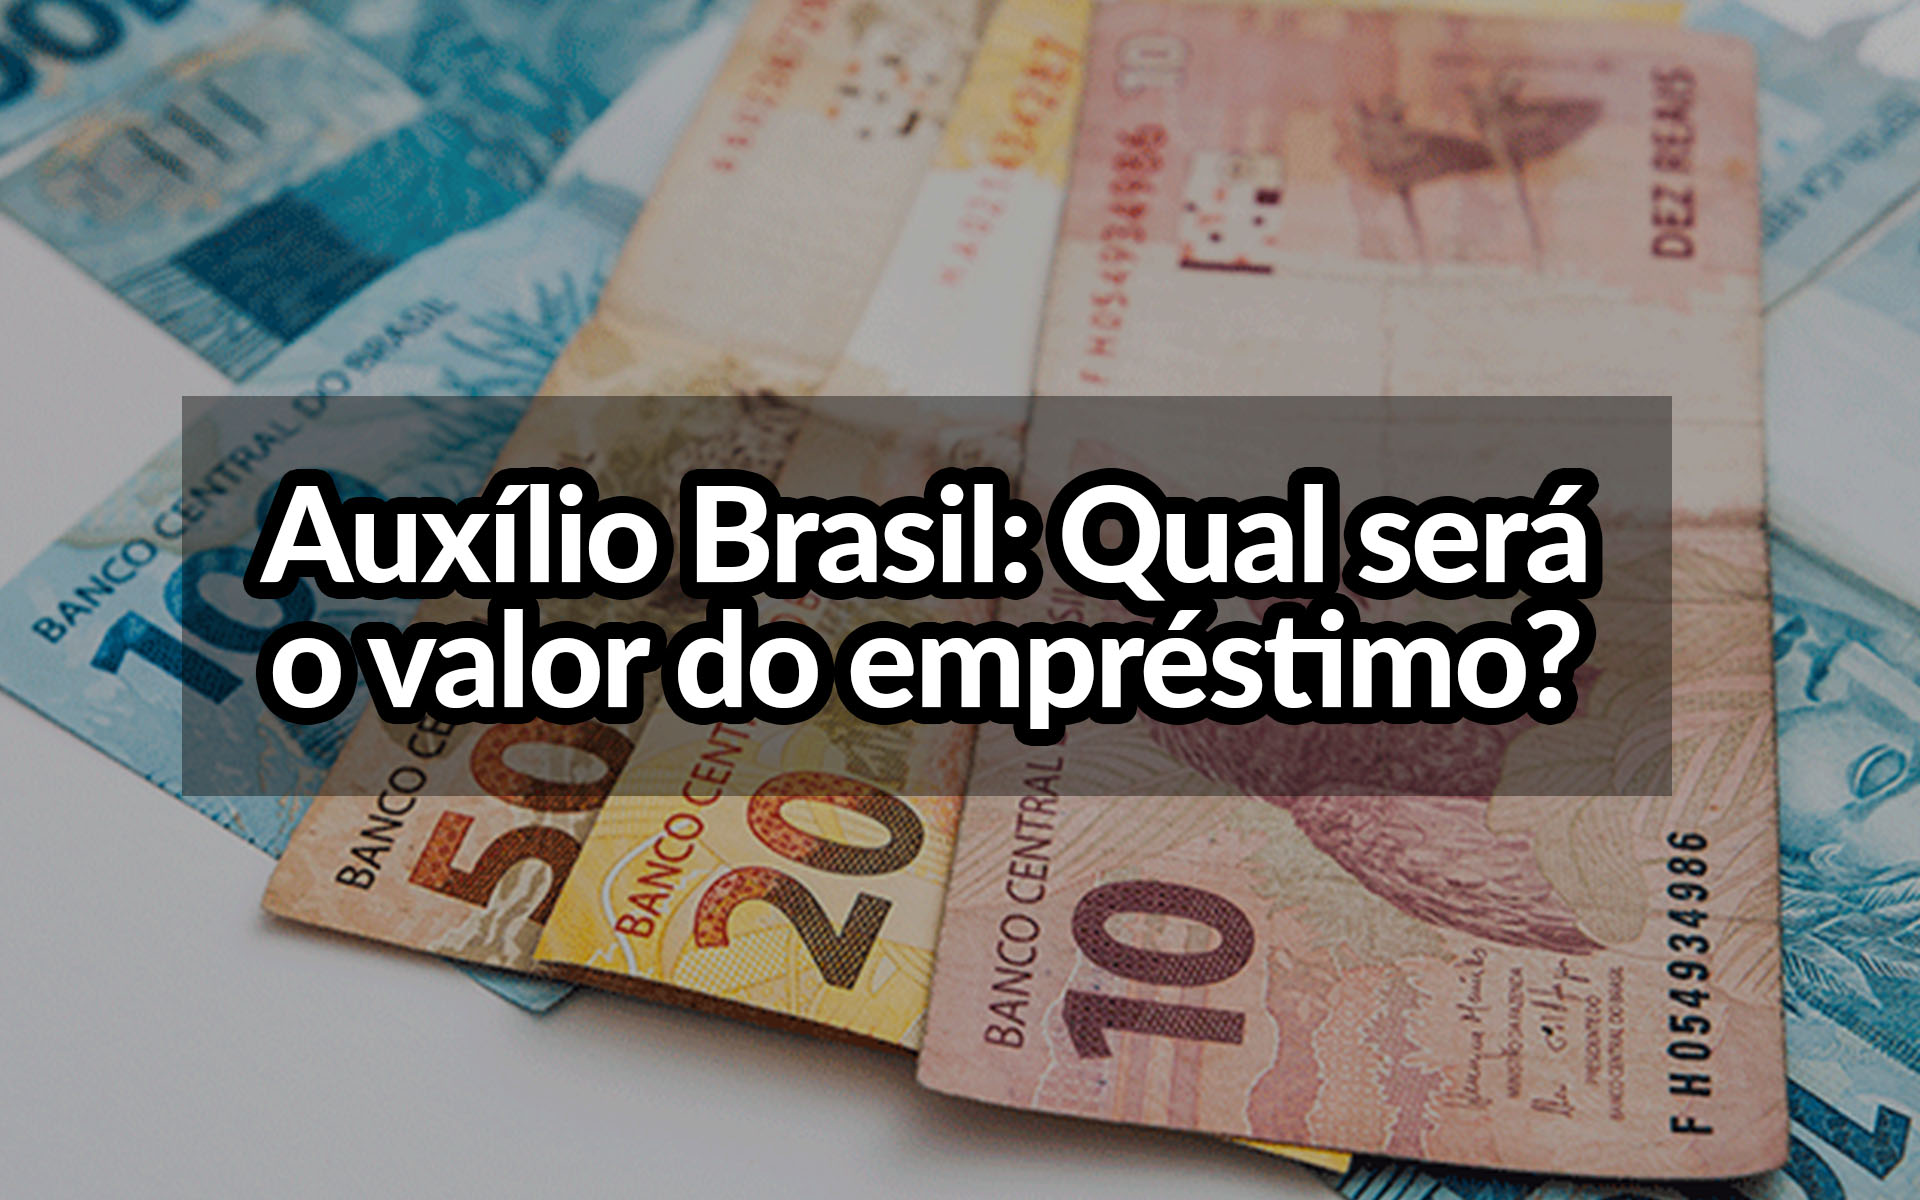 Consignado do Auxílio Brasil: Qual será o valor do empréstimo?